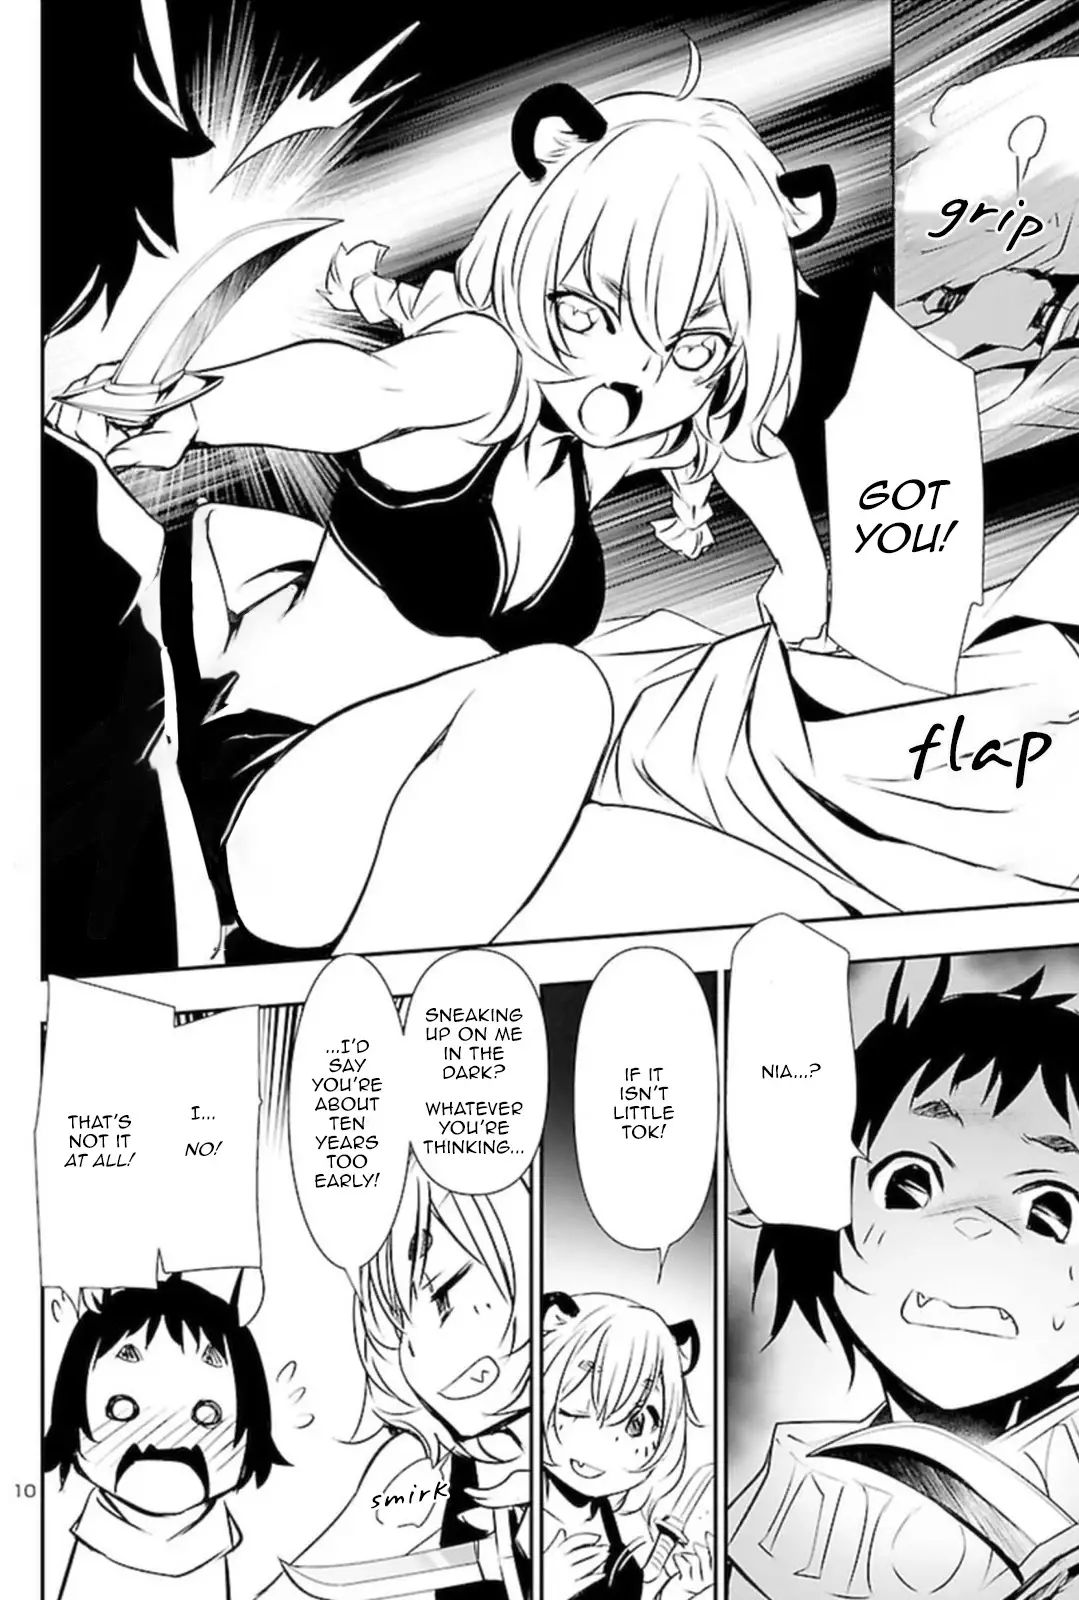 Shinju no Nectar - 55 page 9